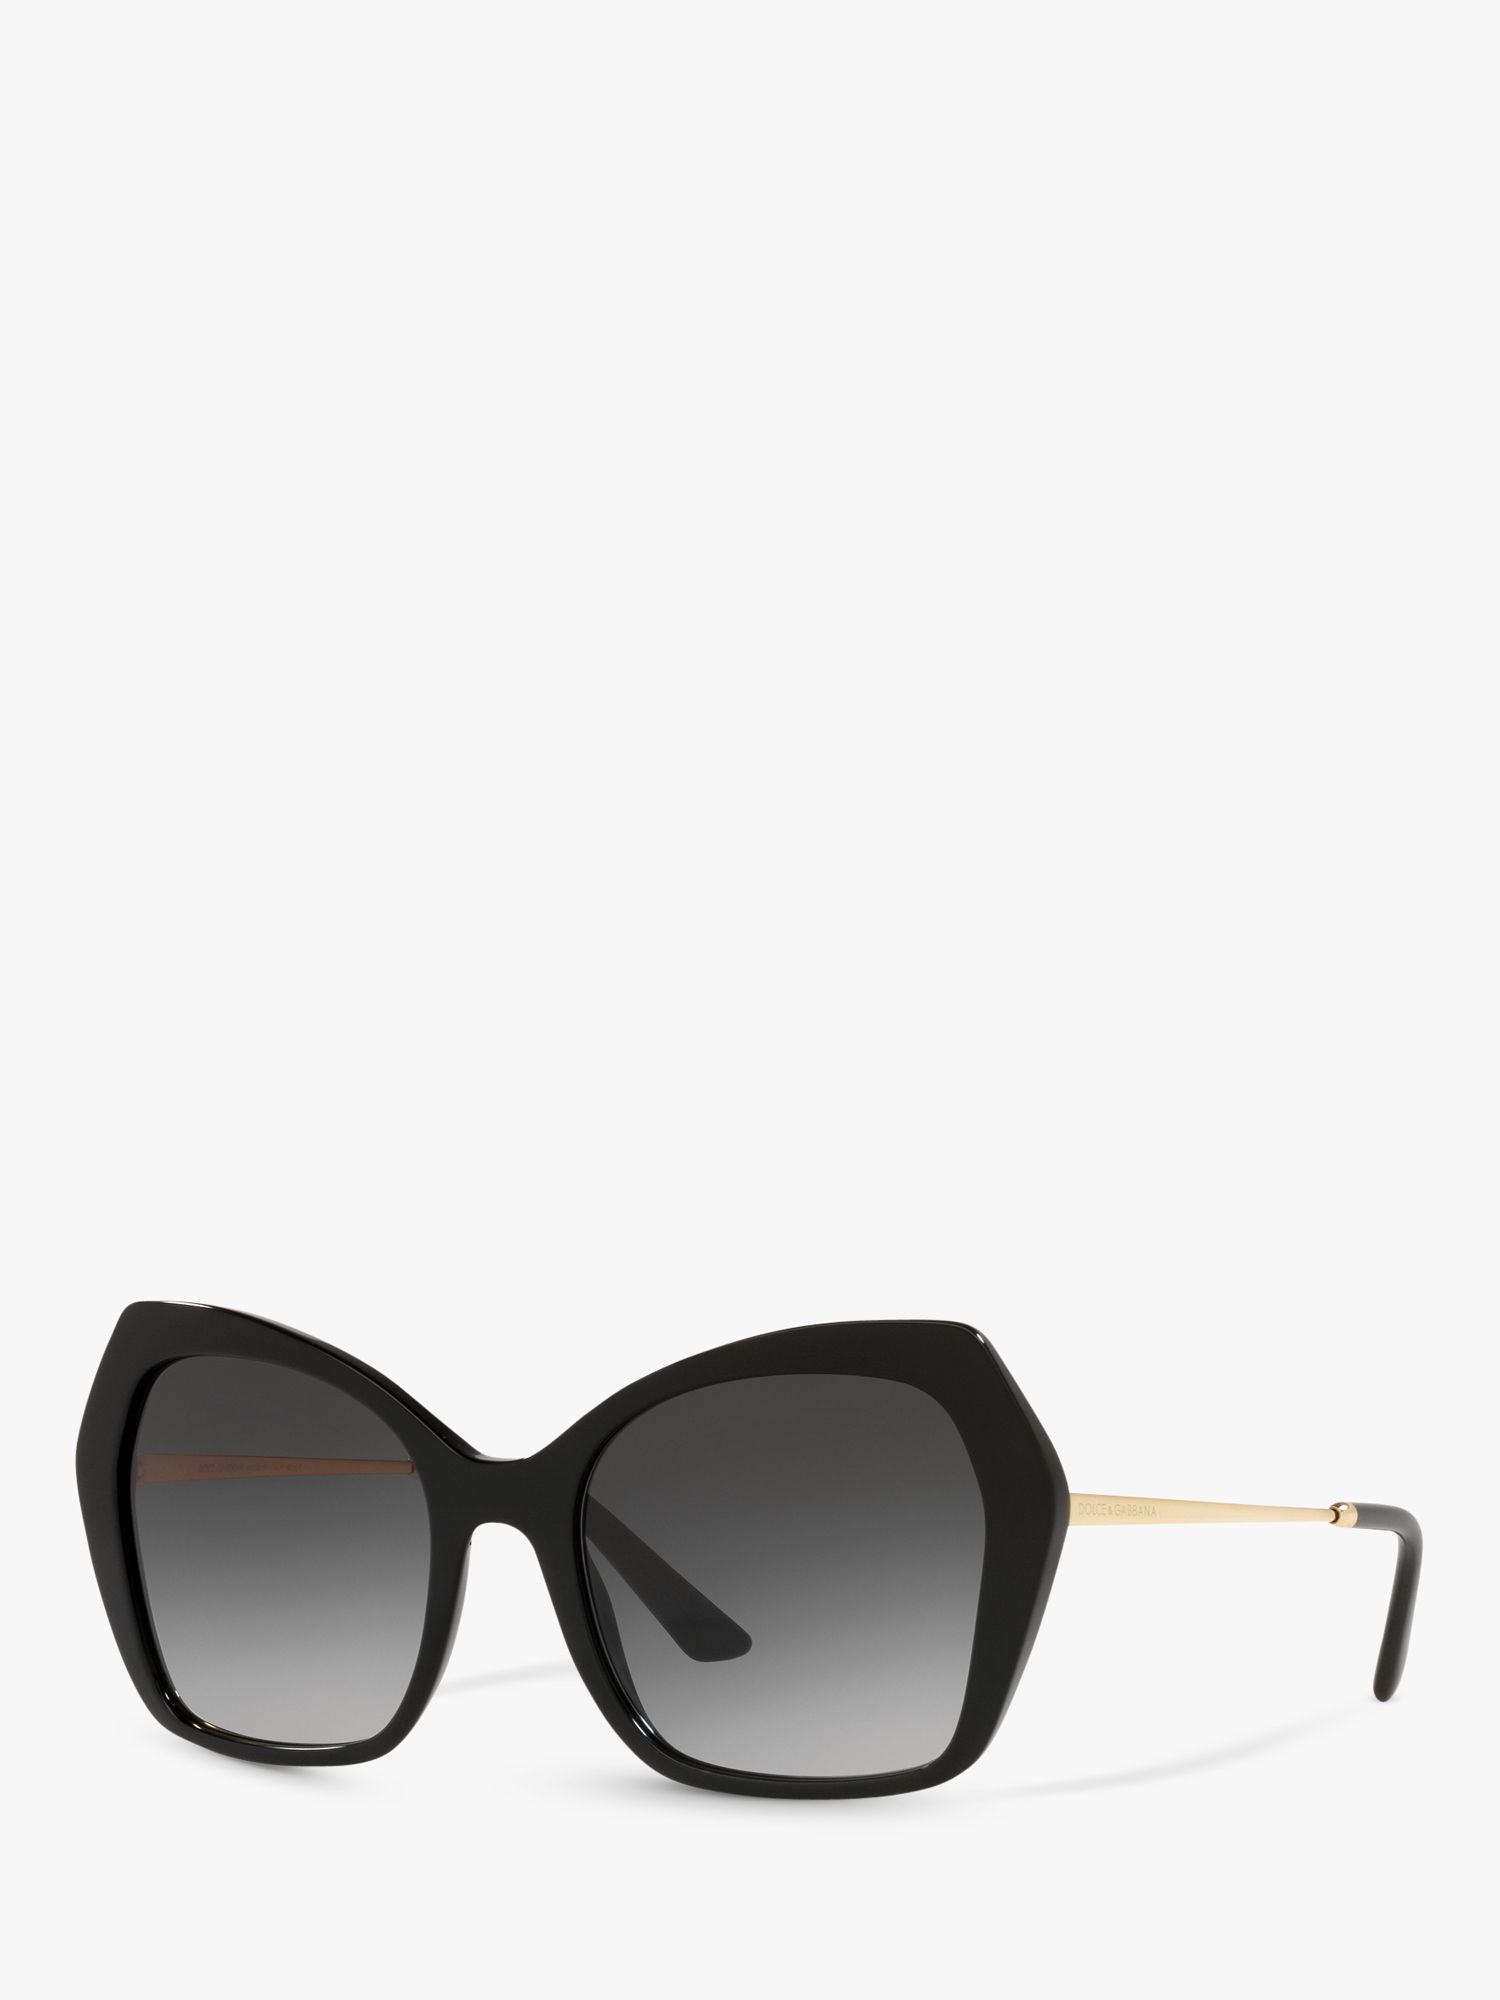 Dolce & Gabbana DG4399 Женские солнцезащитные очки-бабочки, черно-серые с градиентом